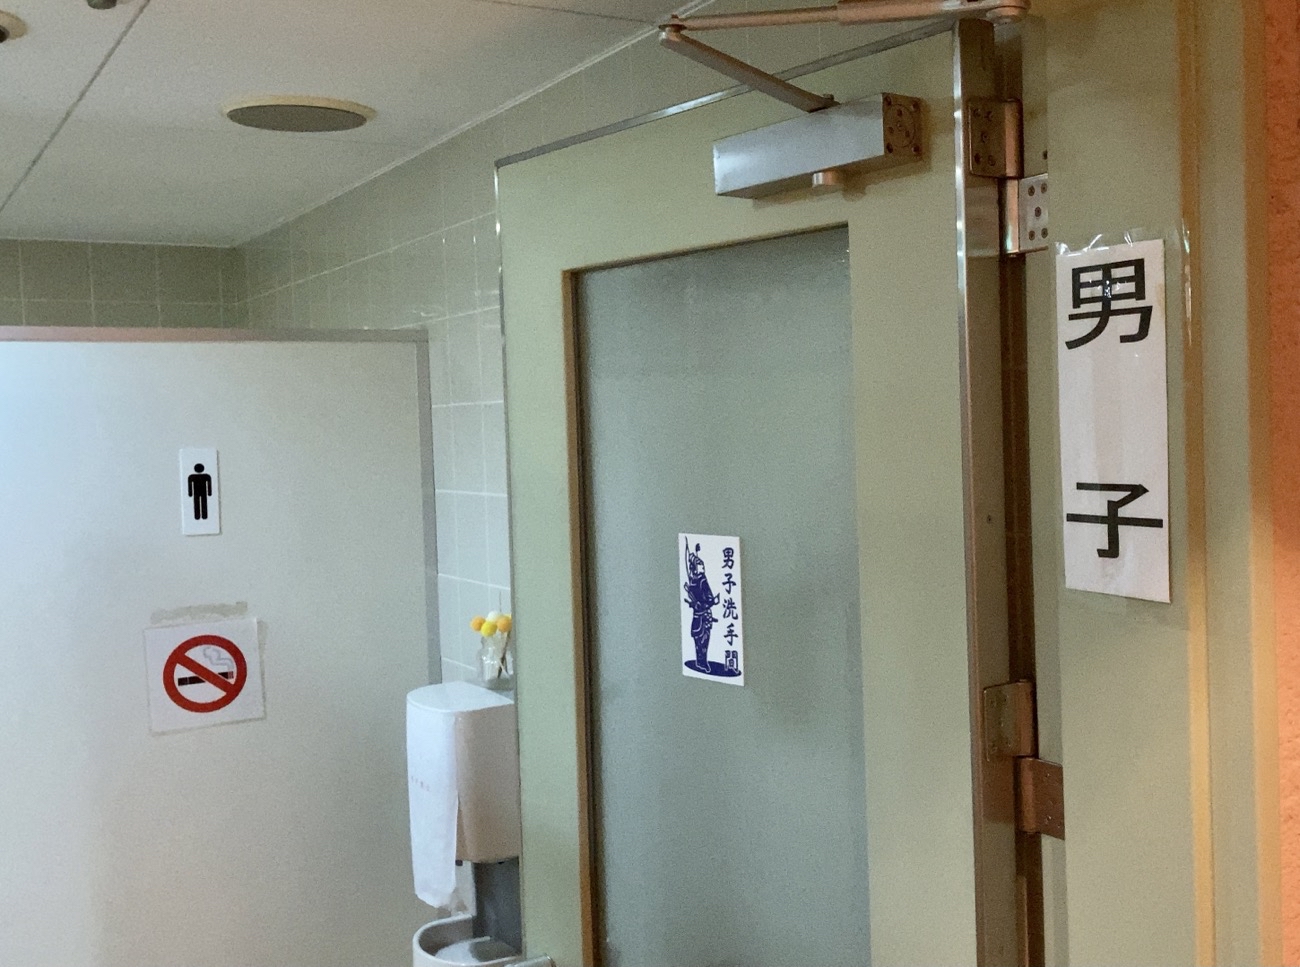 【横浜】中華街の地下には有料の「運気アップトイレ」がある / 怪しい雰囲気が漂うひんやりトイレを調査 ロケット